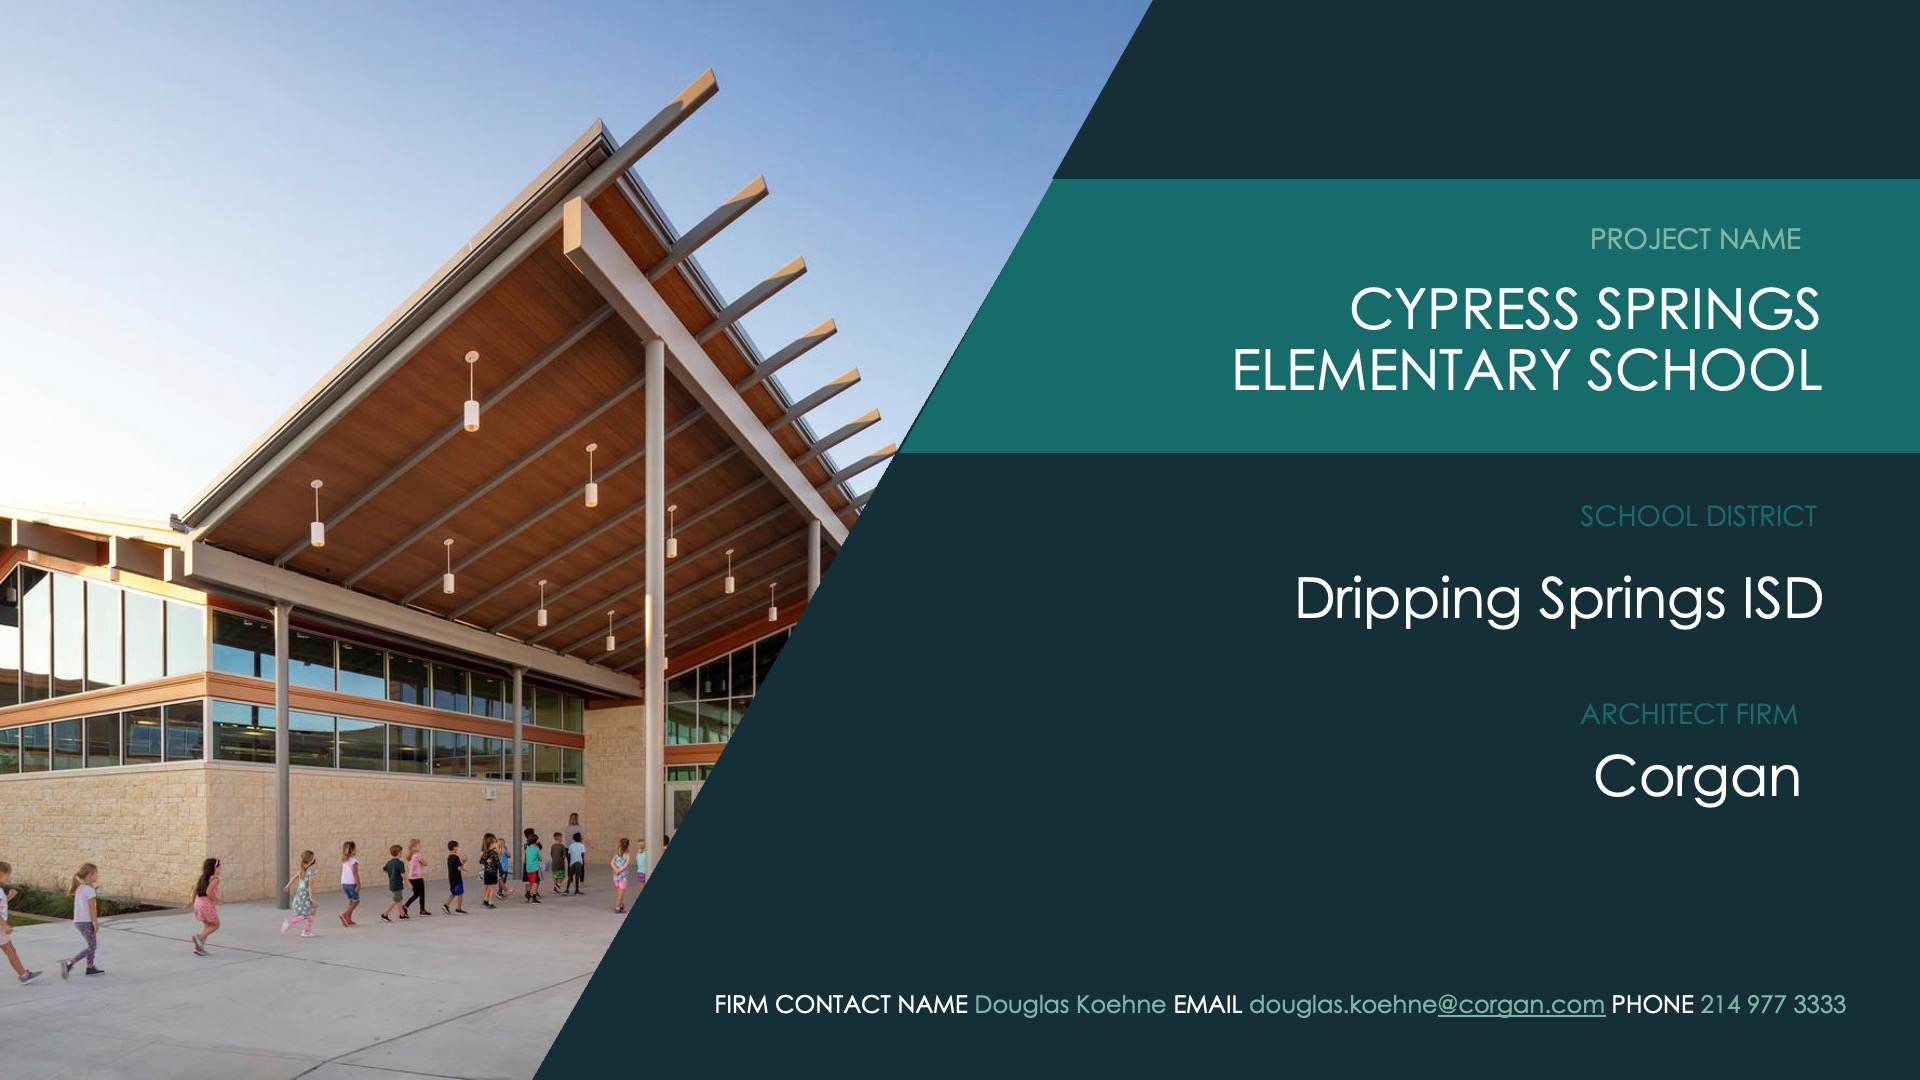 Dripping Springs ISD—Cypress Springs Elementary School